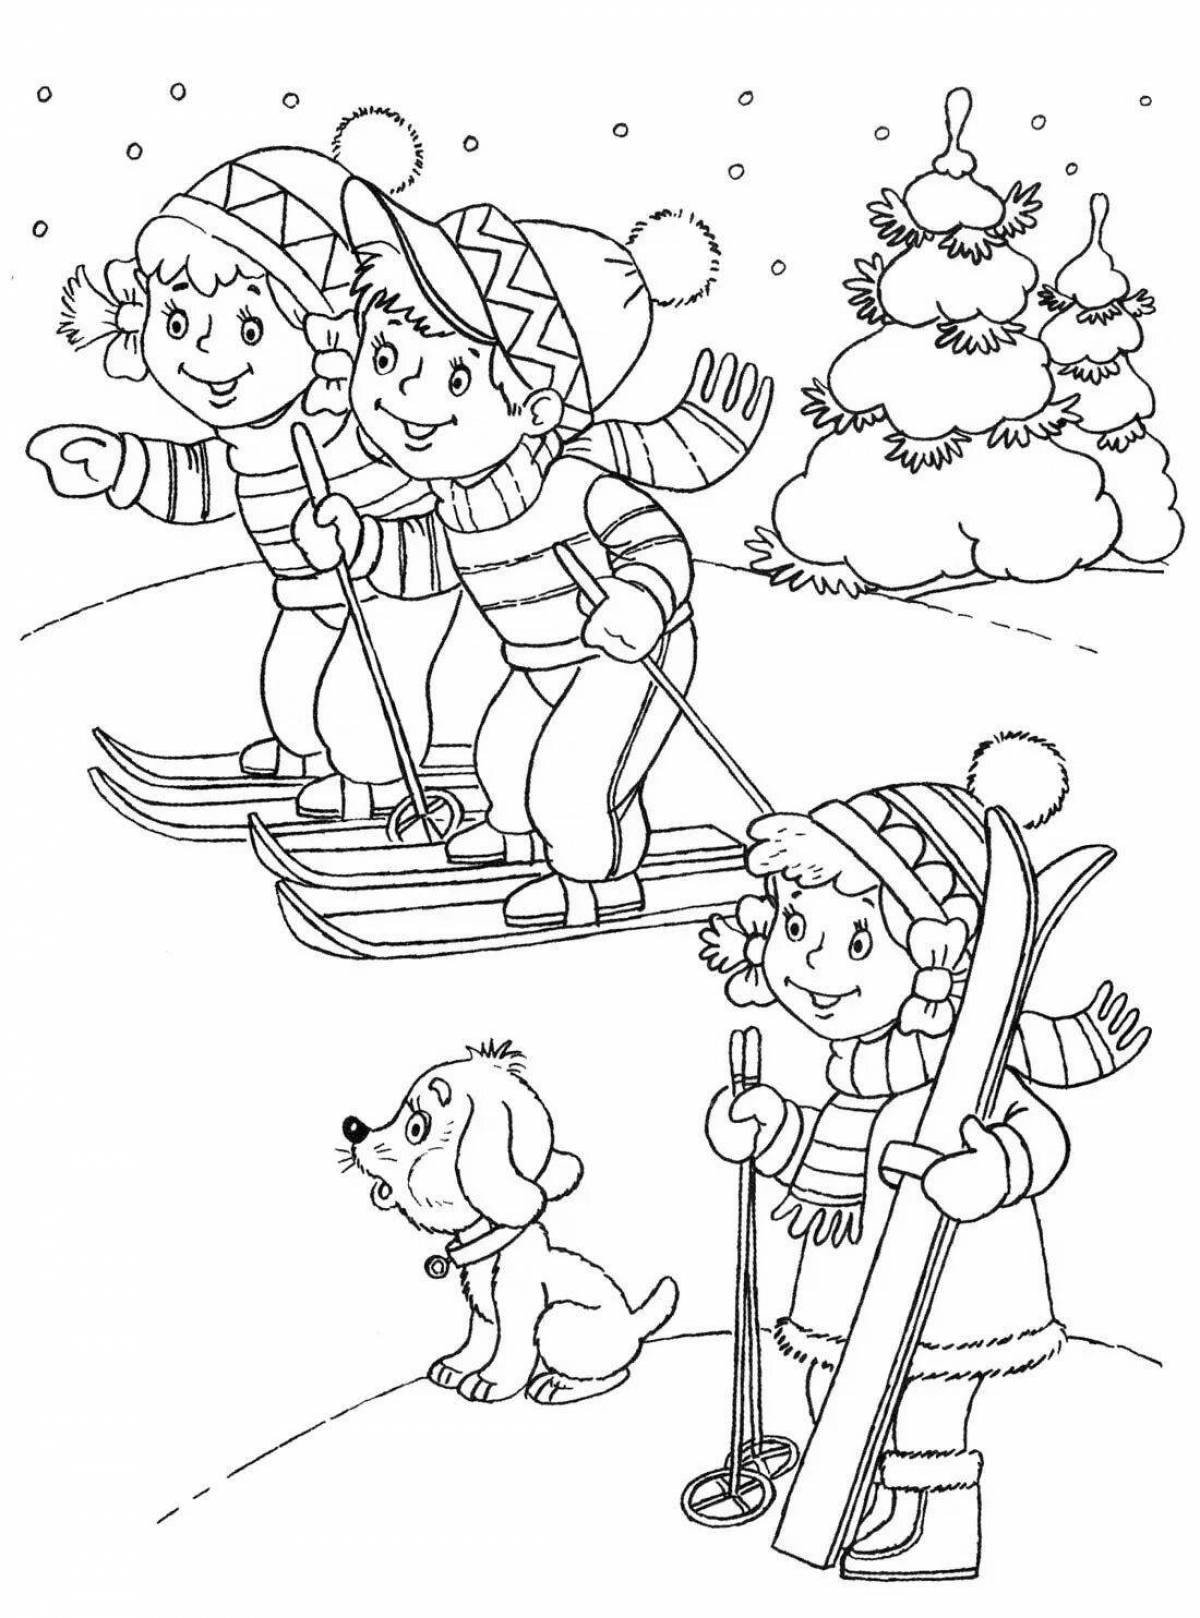 Charming winter activities for children